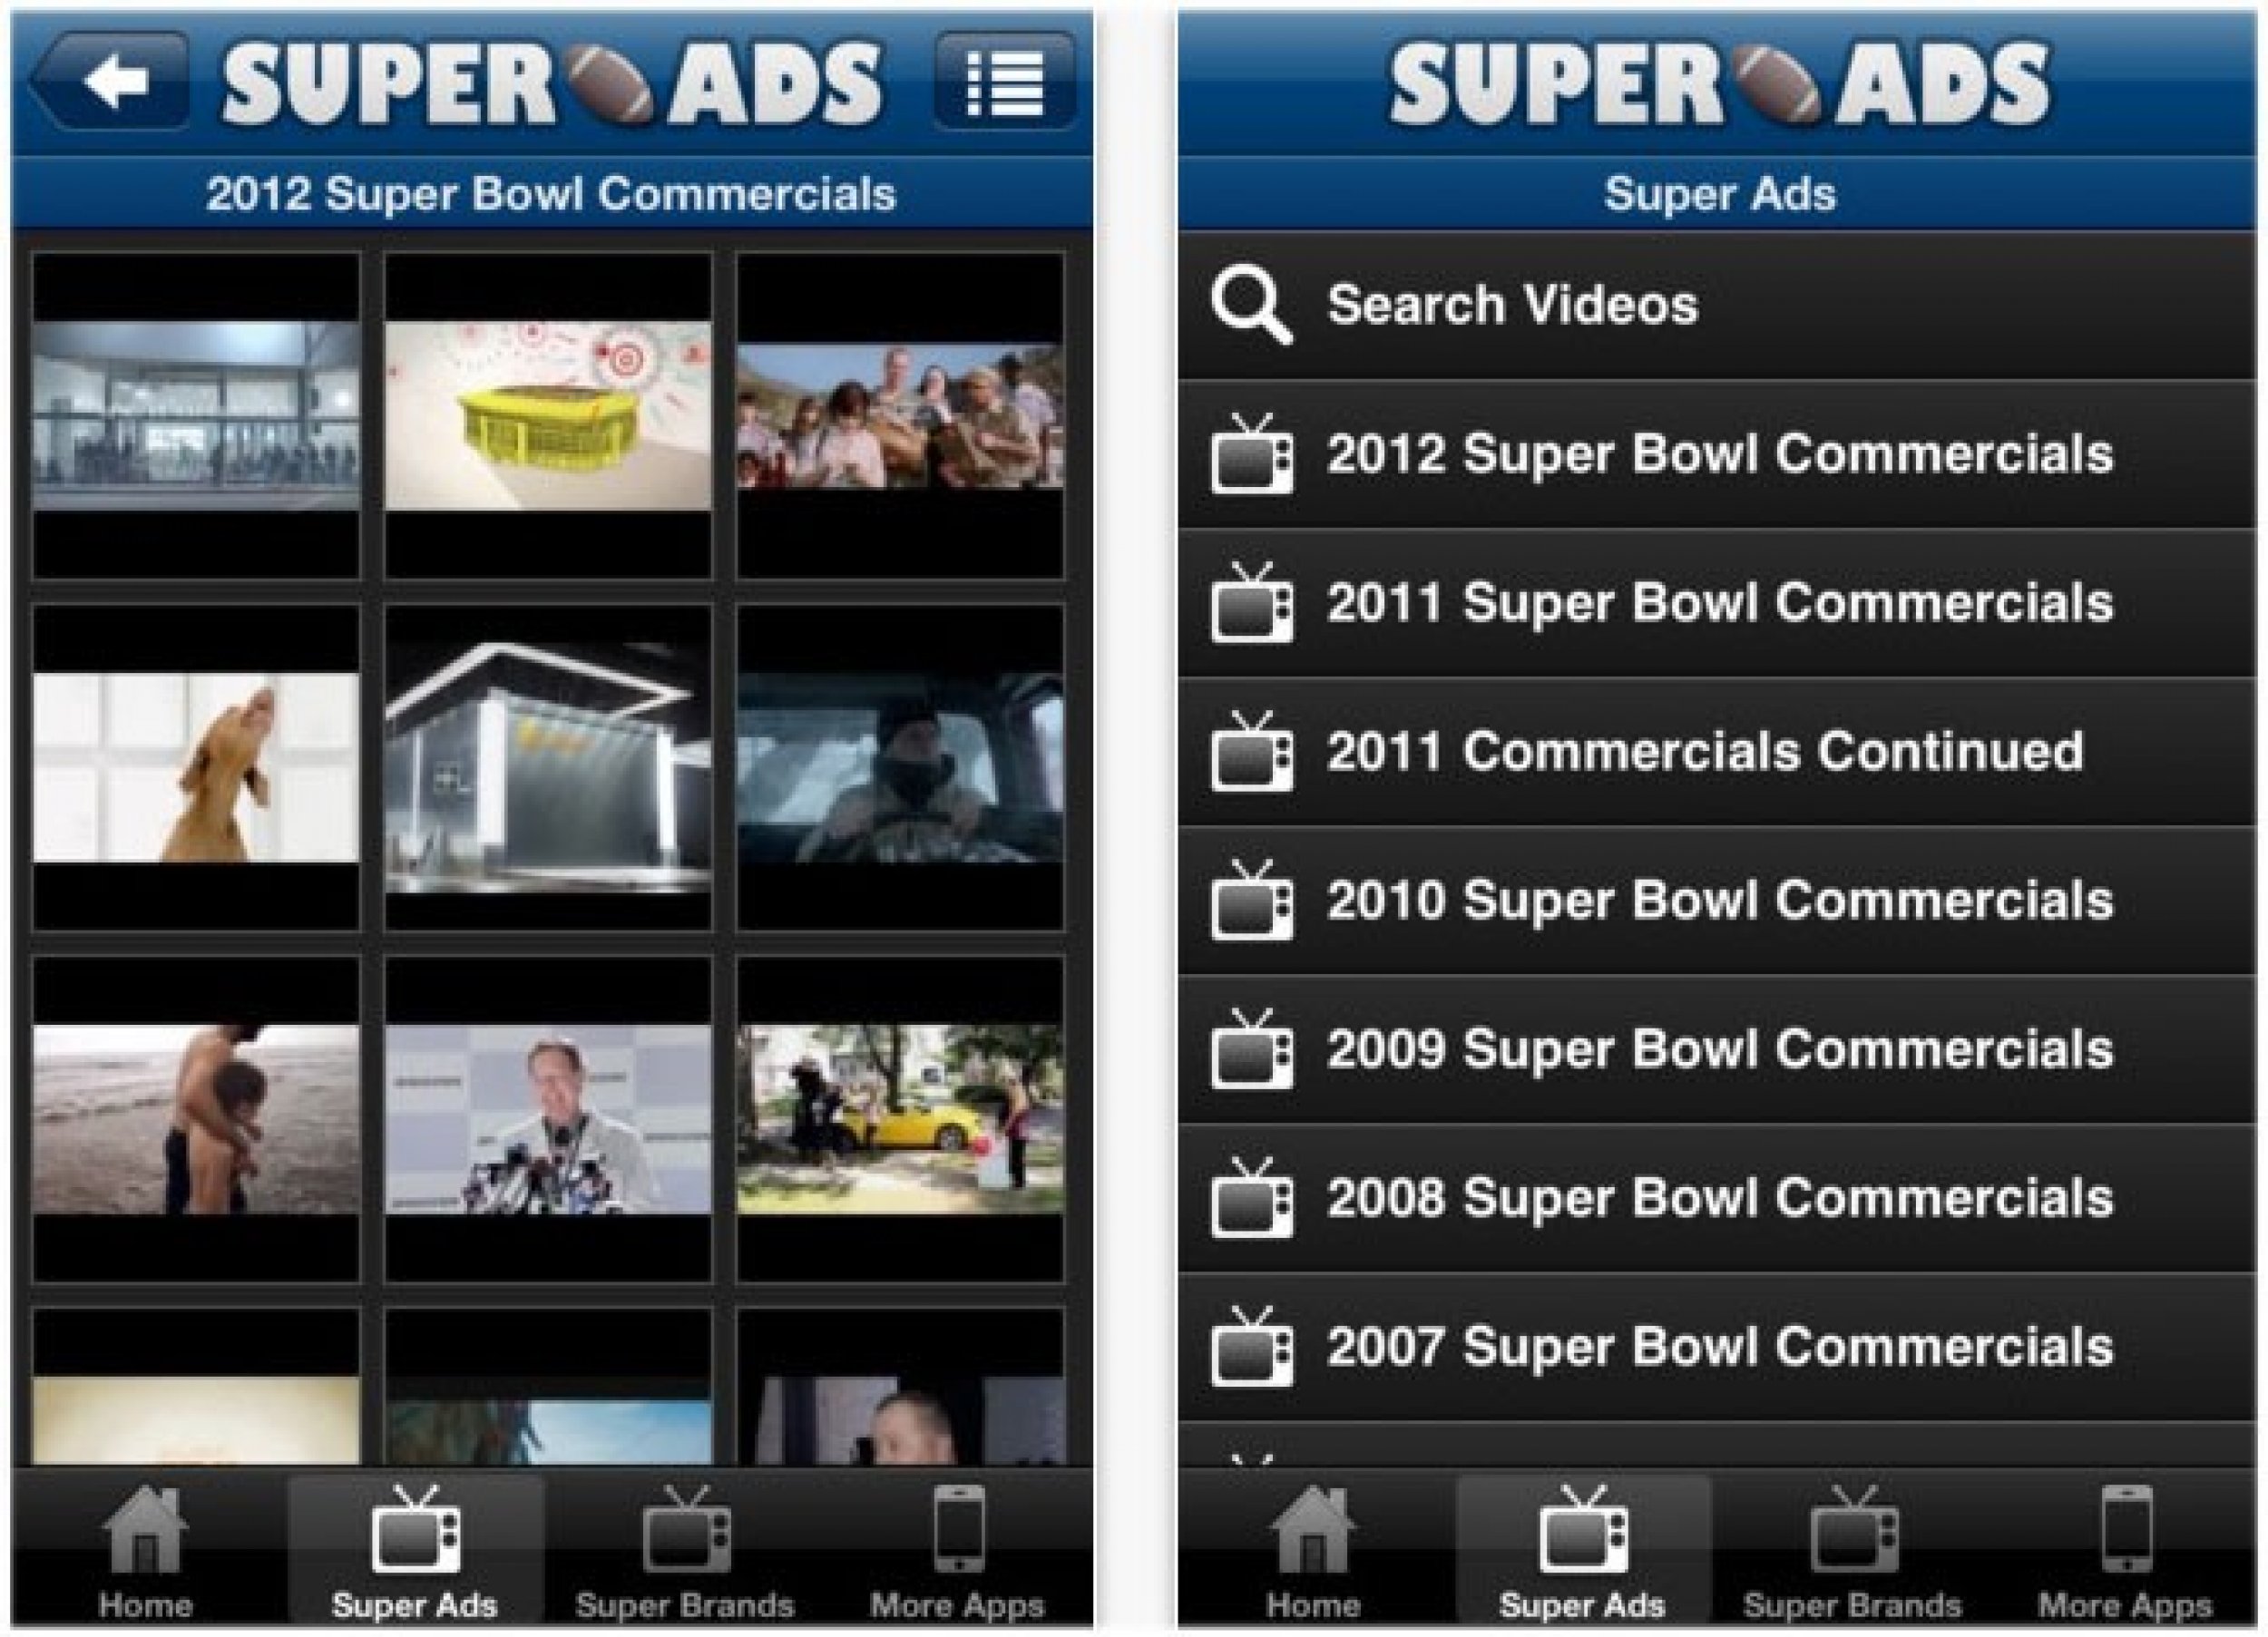 Super Ads Super Bowl Commercials